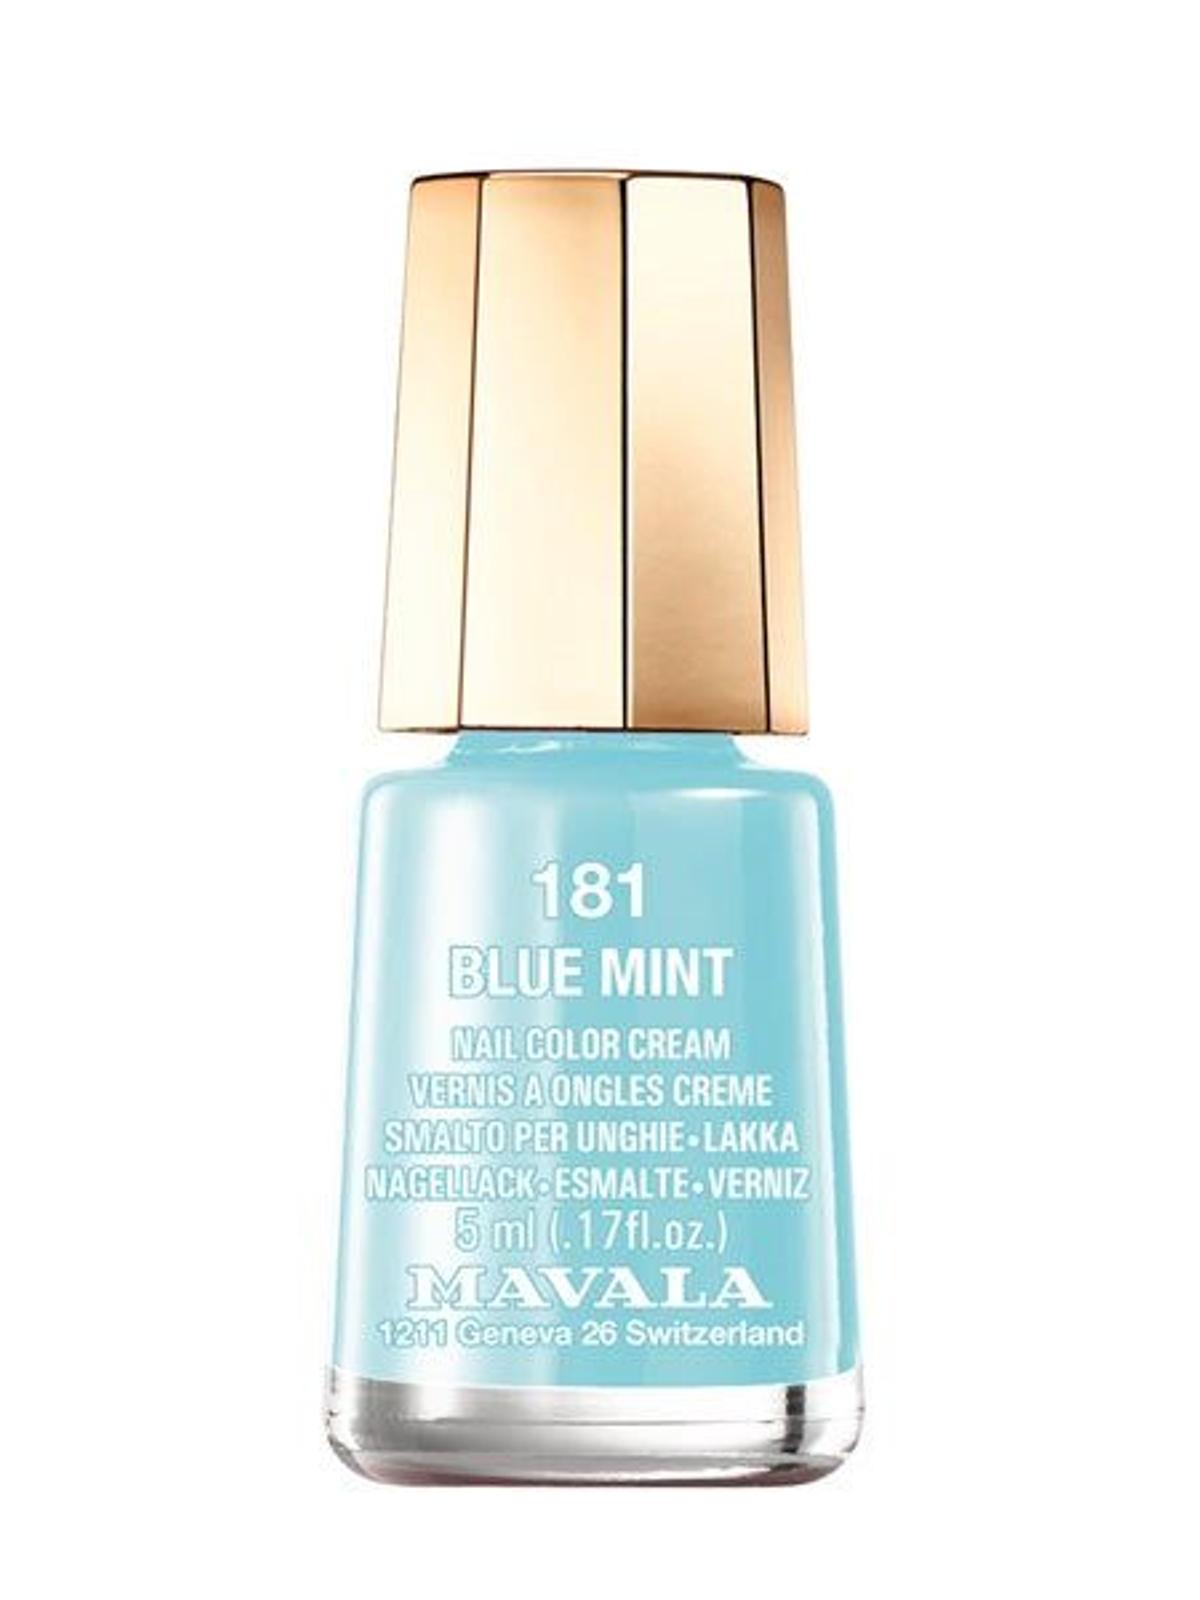 Esmalte de uñas Blue Mint de Mavala